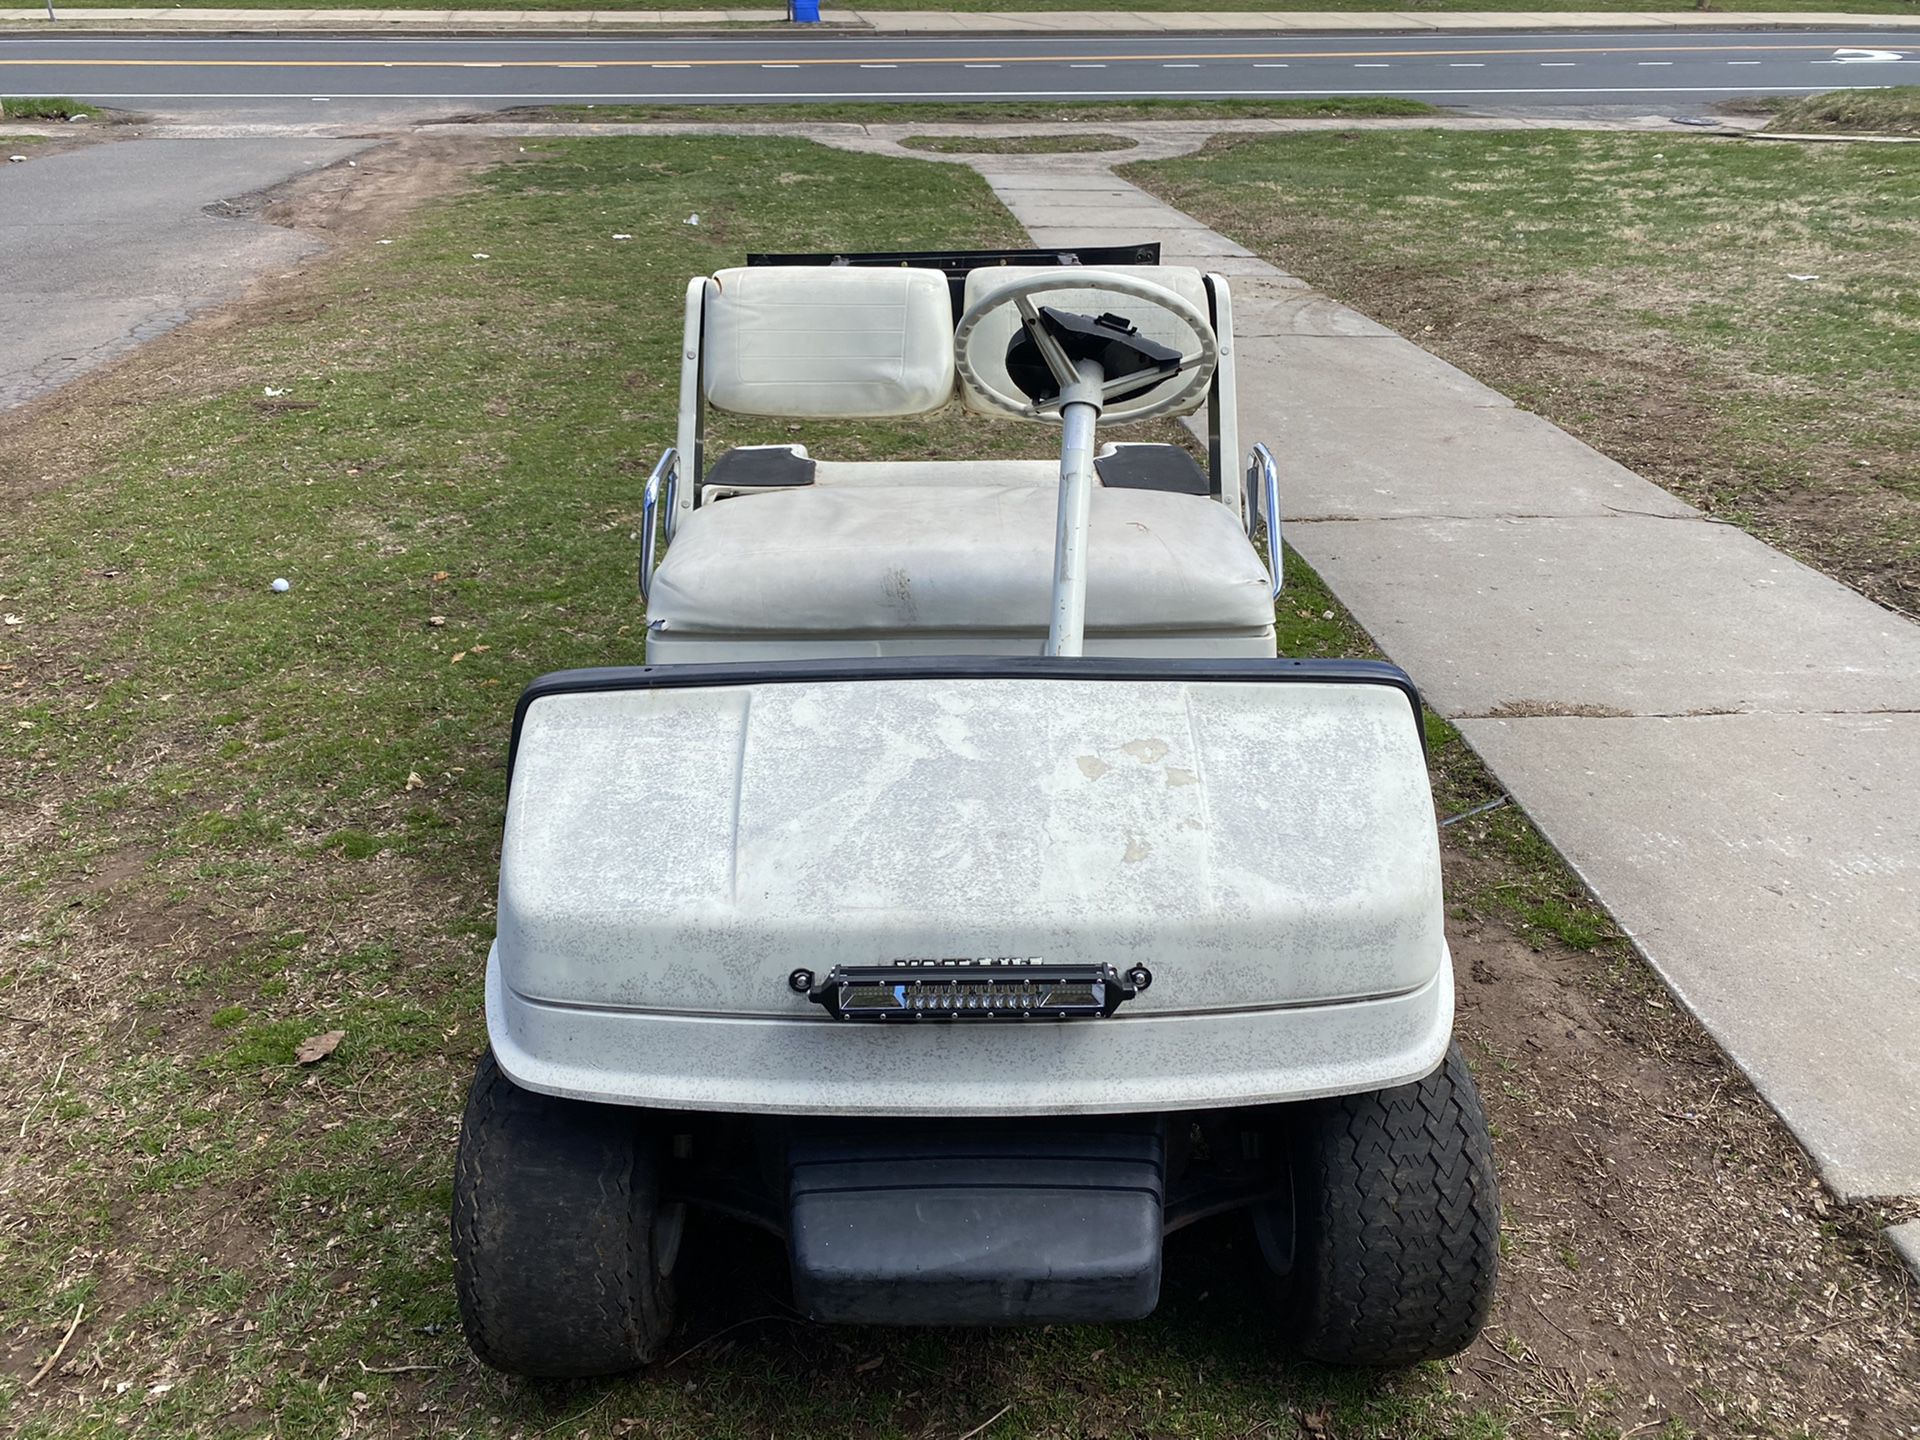 94’ Yamaha golf cart